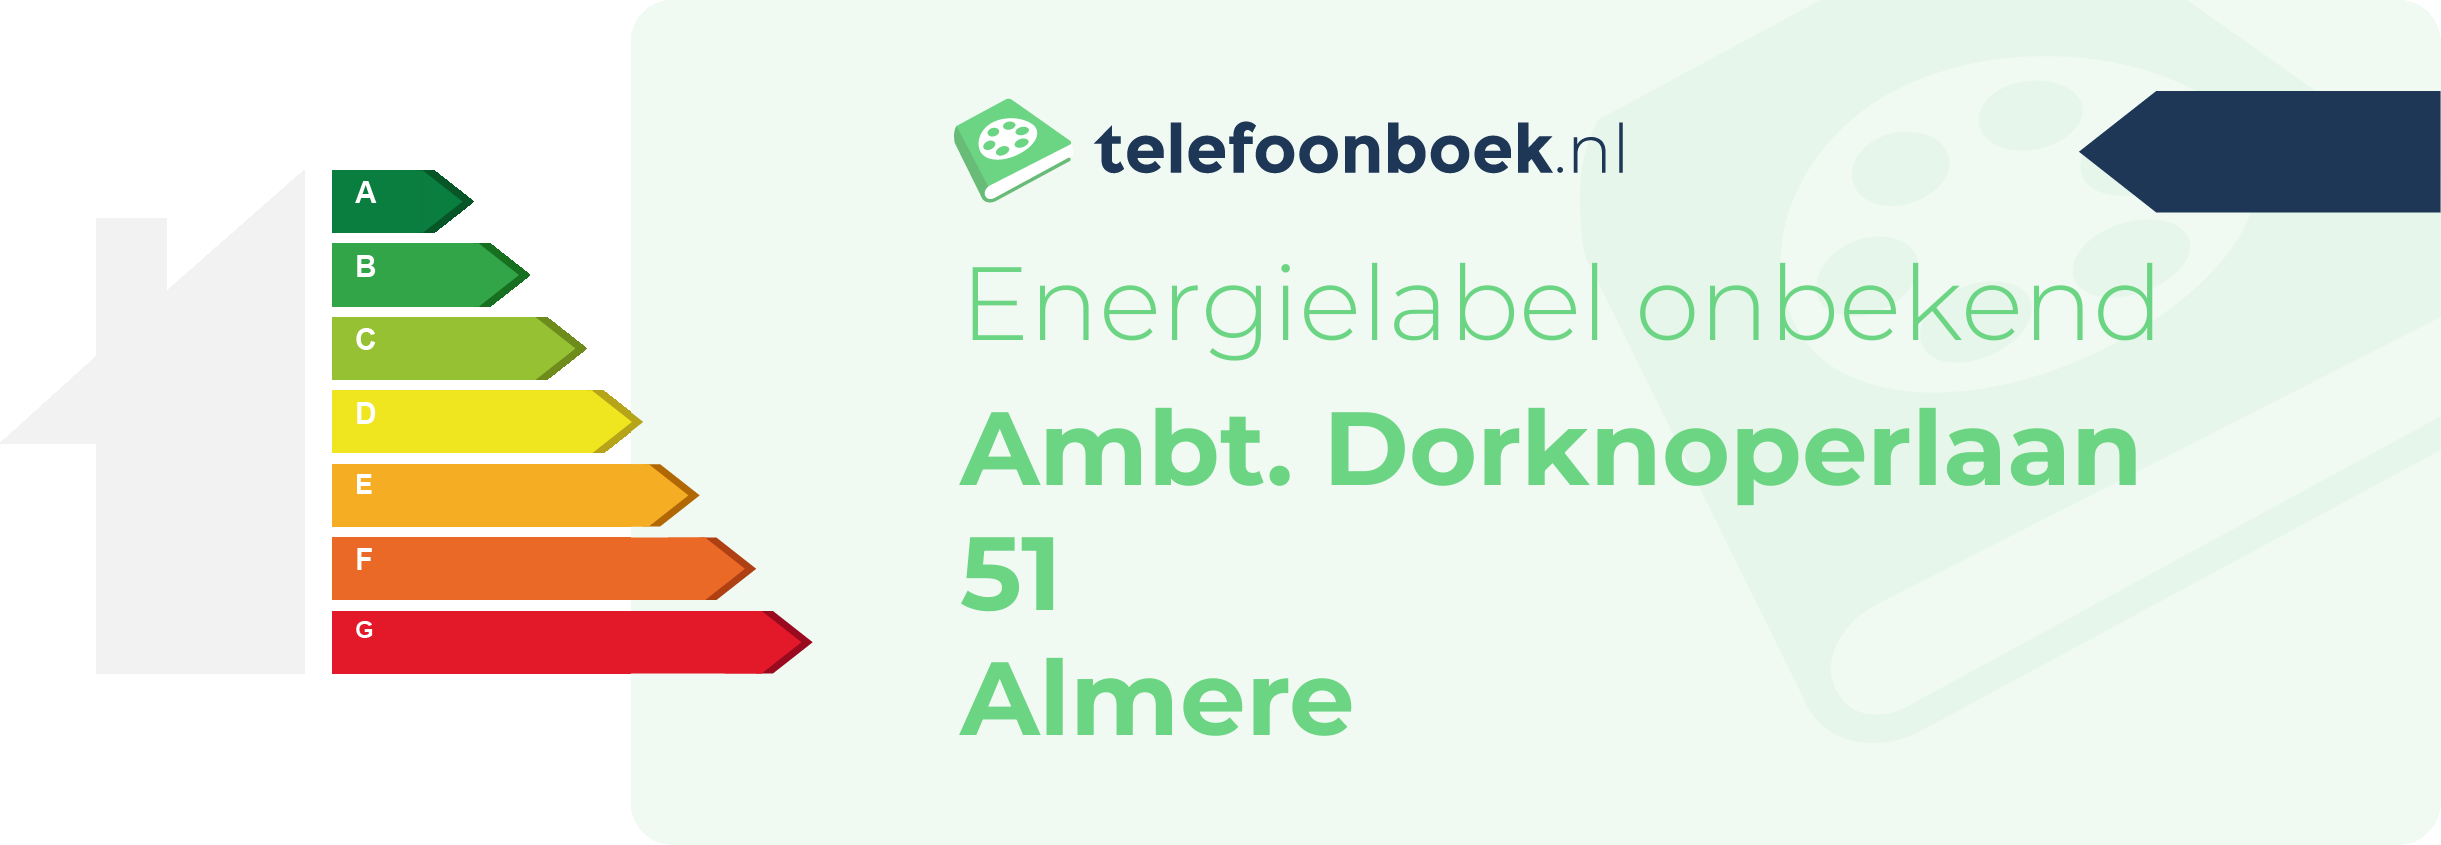 Energielabel Ambt. Dorknoperlaan 51 Almere